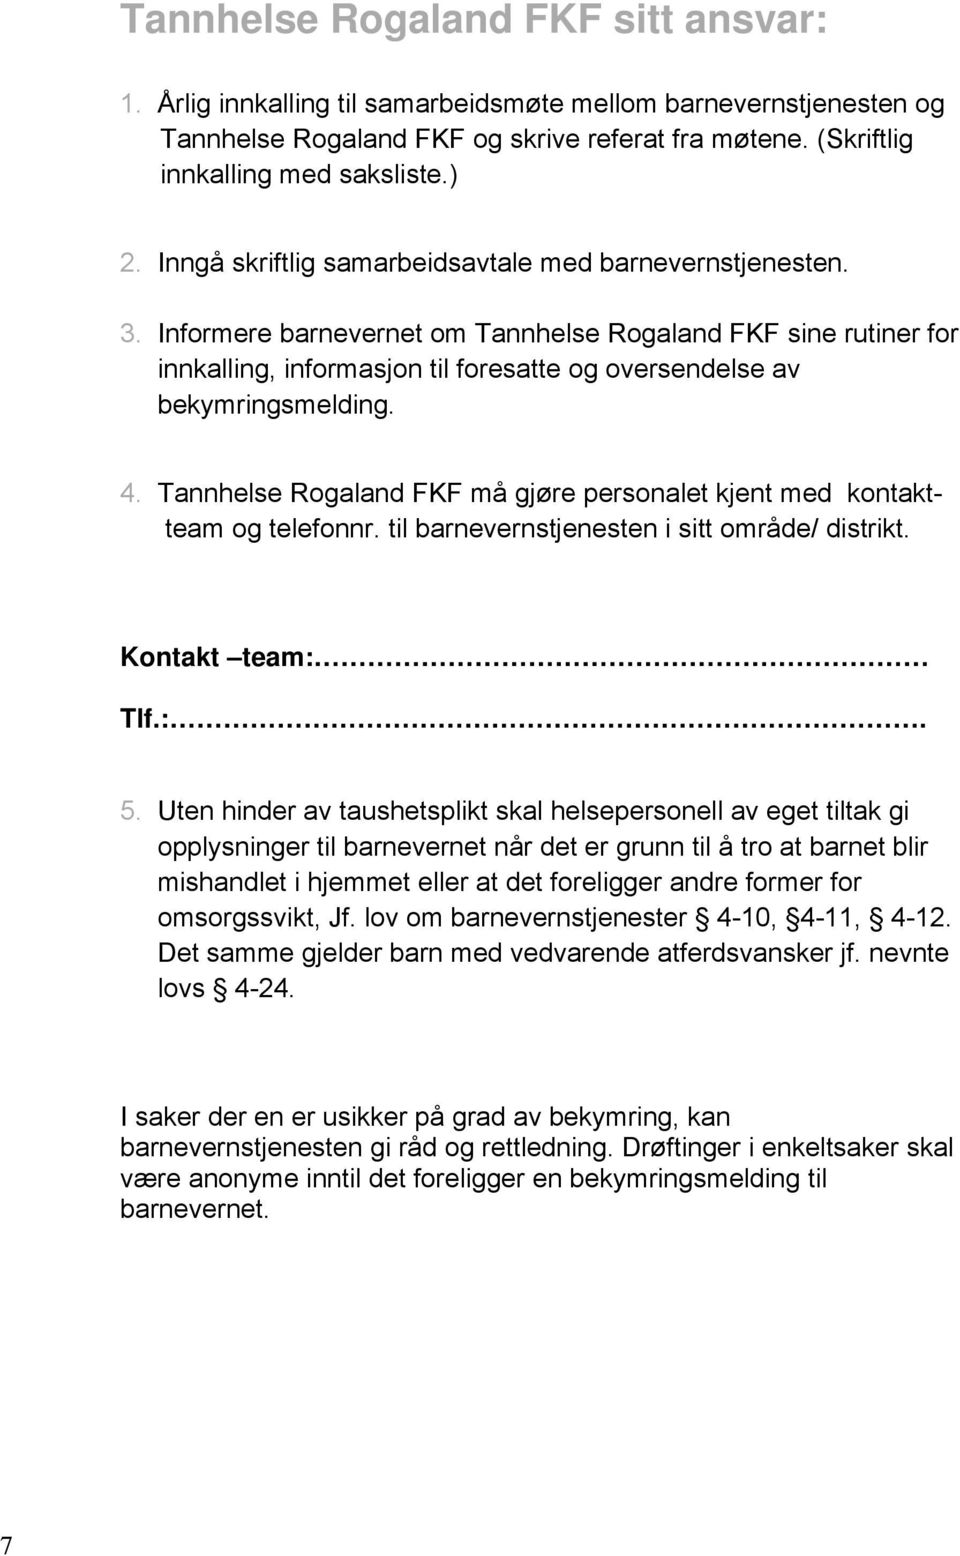 Informere barnevernet om Tannhelse Rogaland FKF sine rutiner for innkalling, informasjon til foresatte og oversendelse av bekymringsmelding. 4.